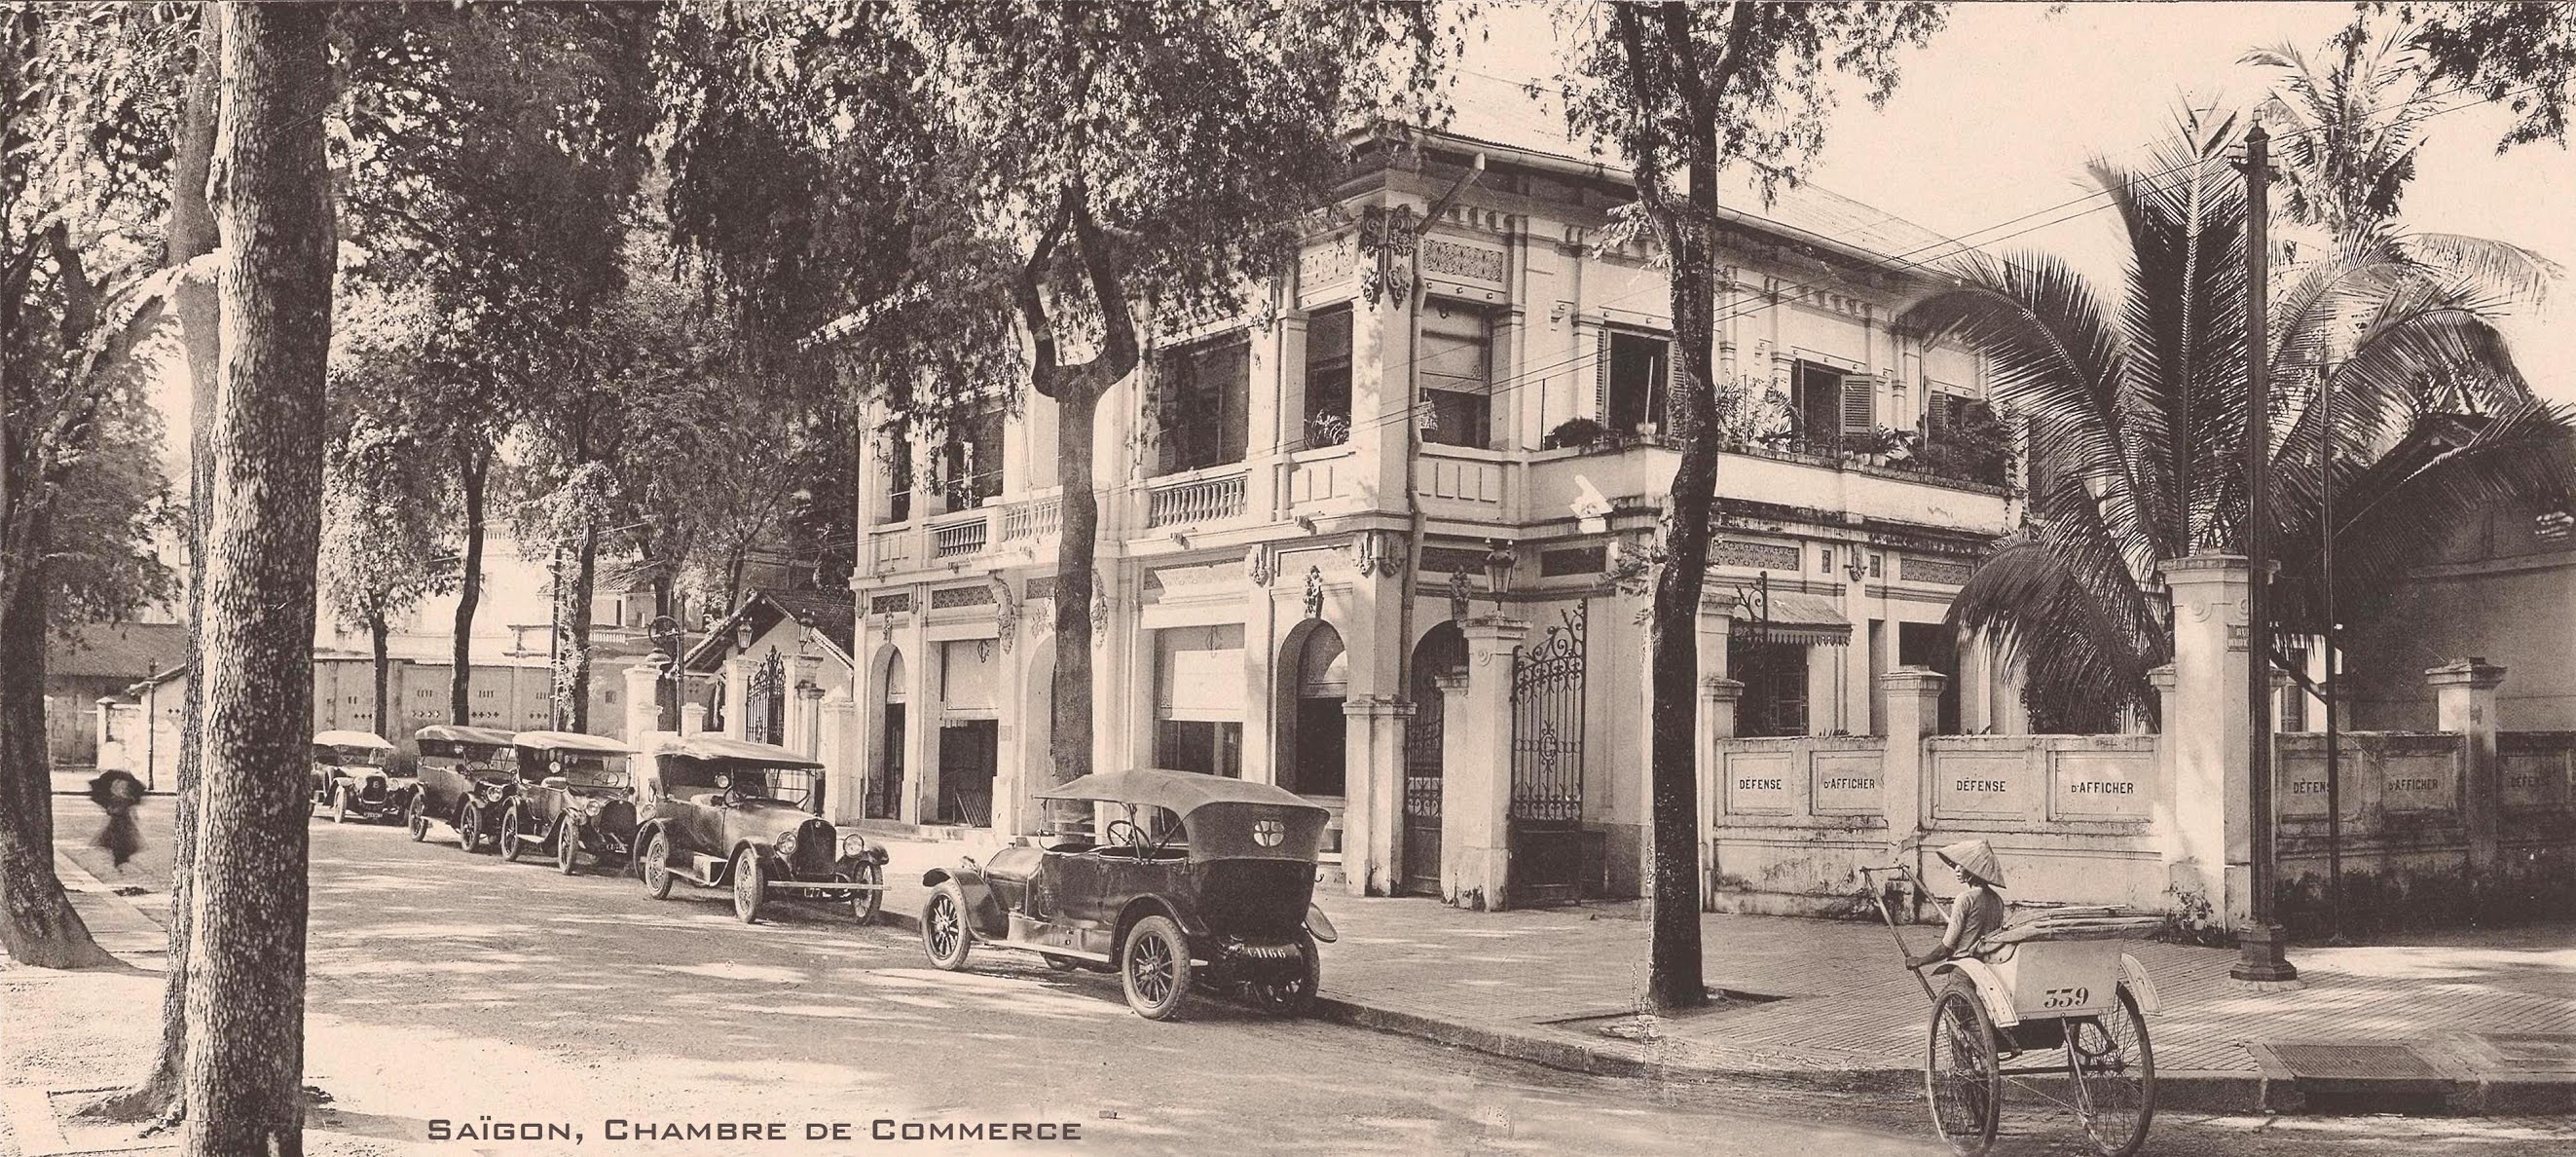 Hình ảnh Việt Nam xưa: Đường phố Sài Gòn cách nay đúng 1 thế kỷ (1921 - 2021)